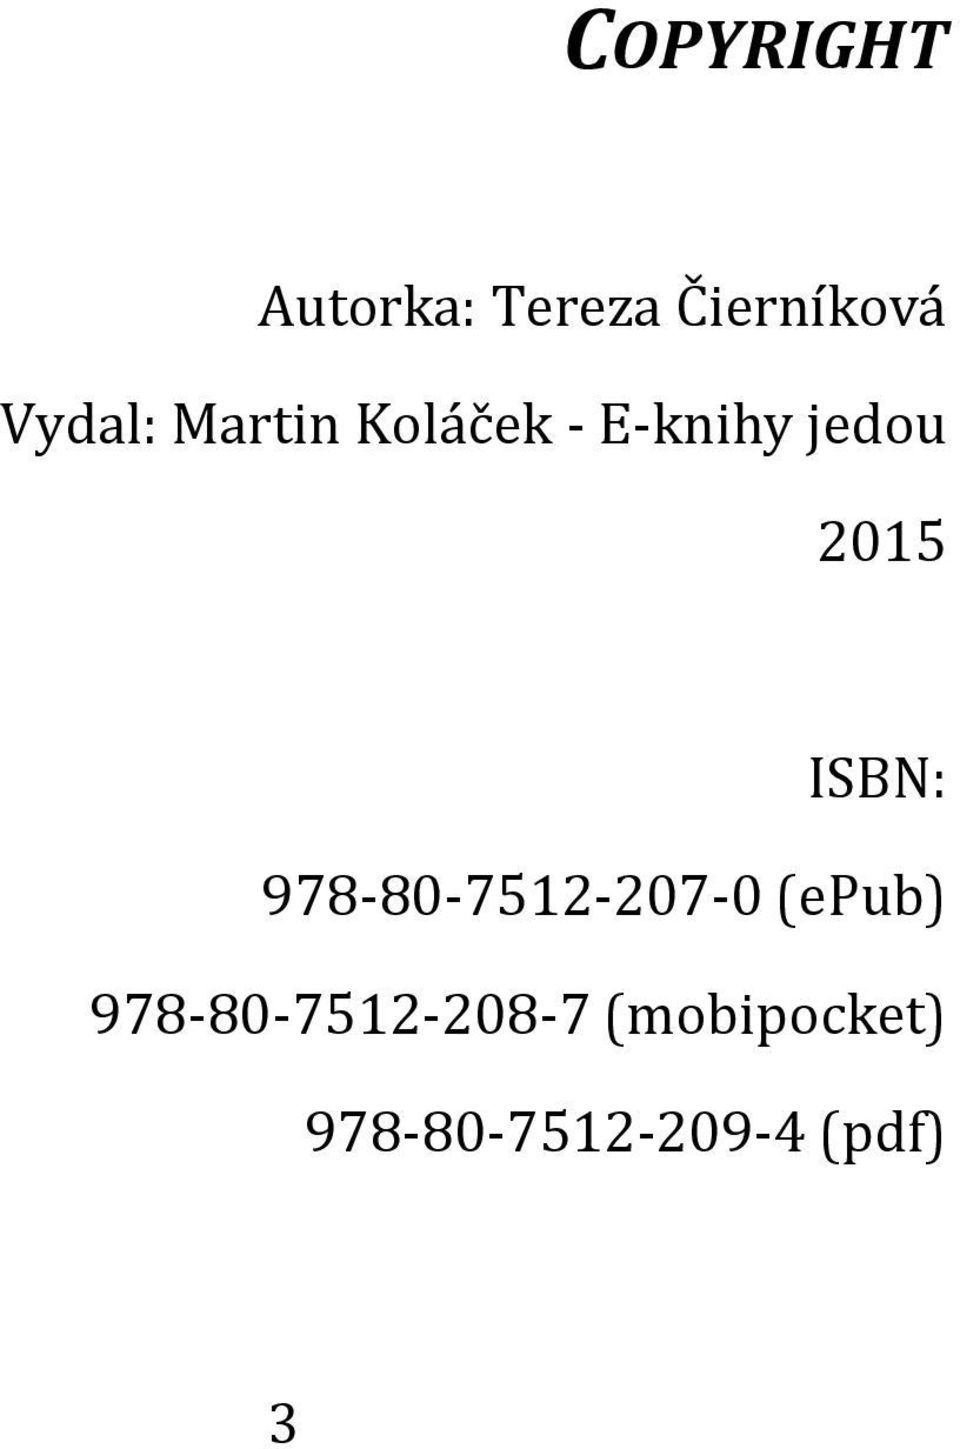 2015 ISBN: 978-80-7512-207-0 (epub)